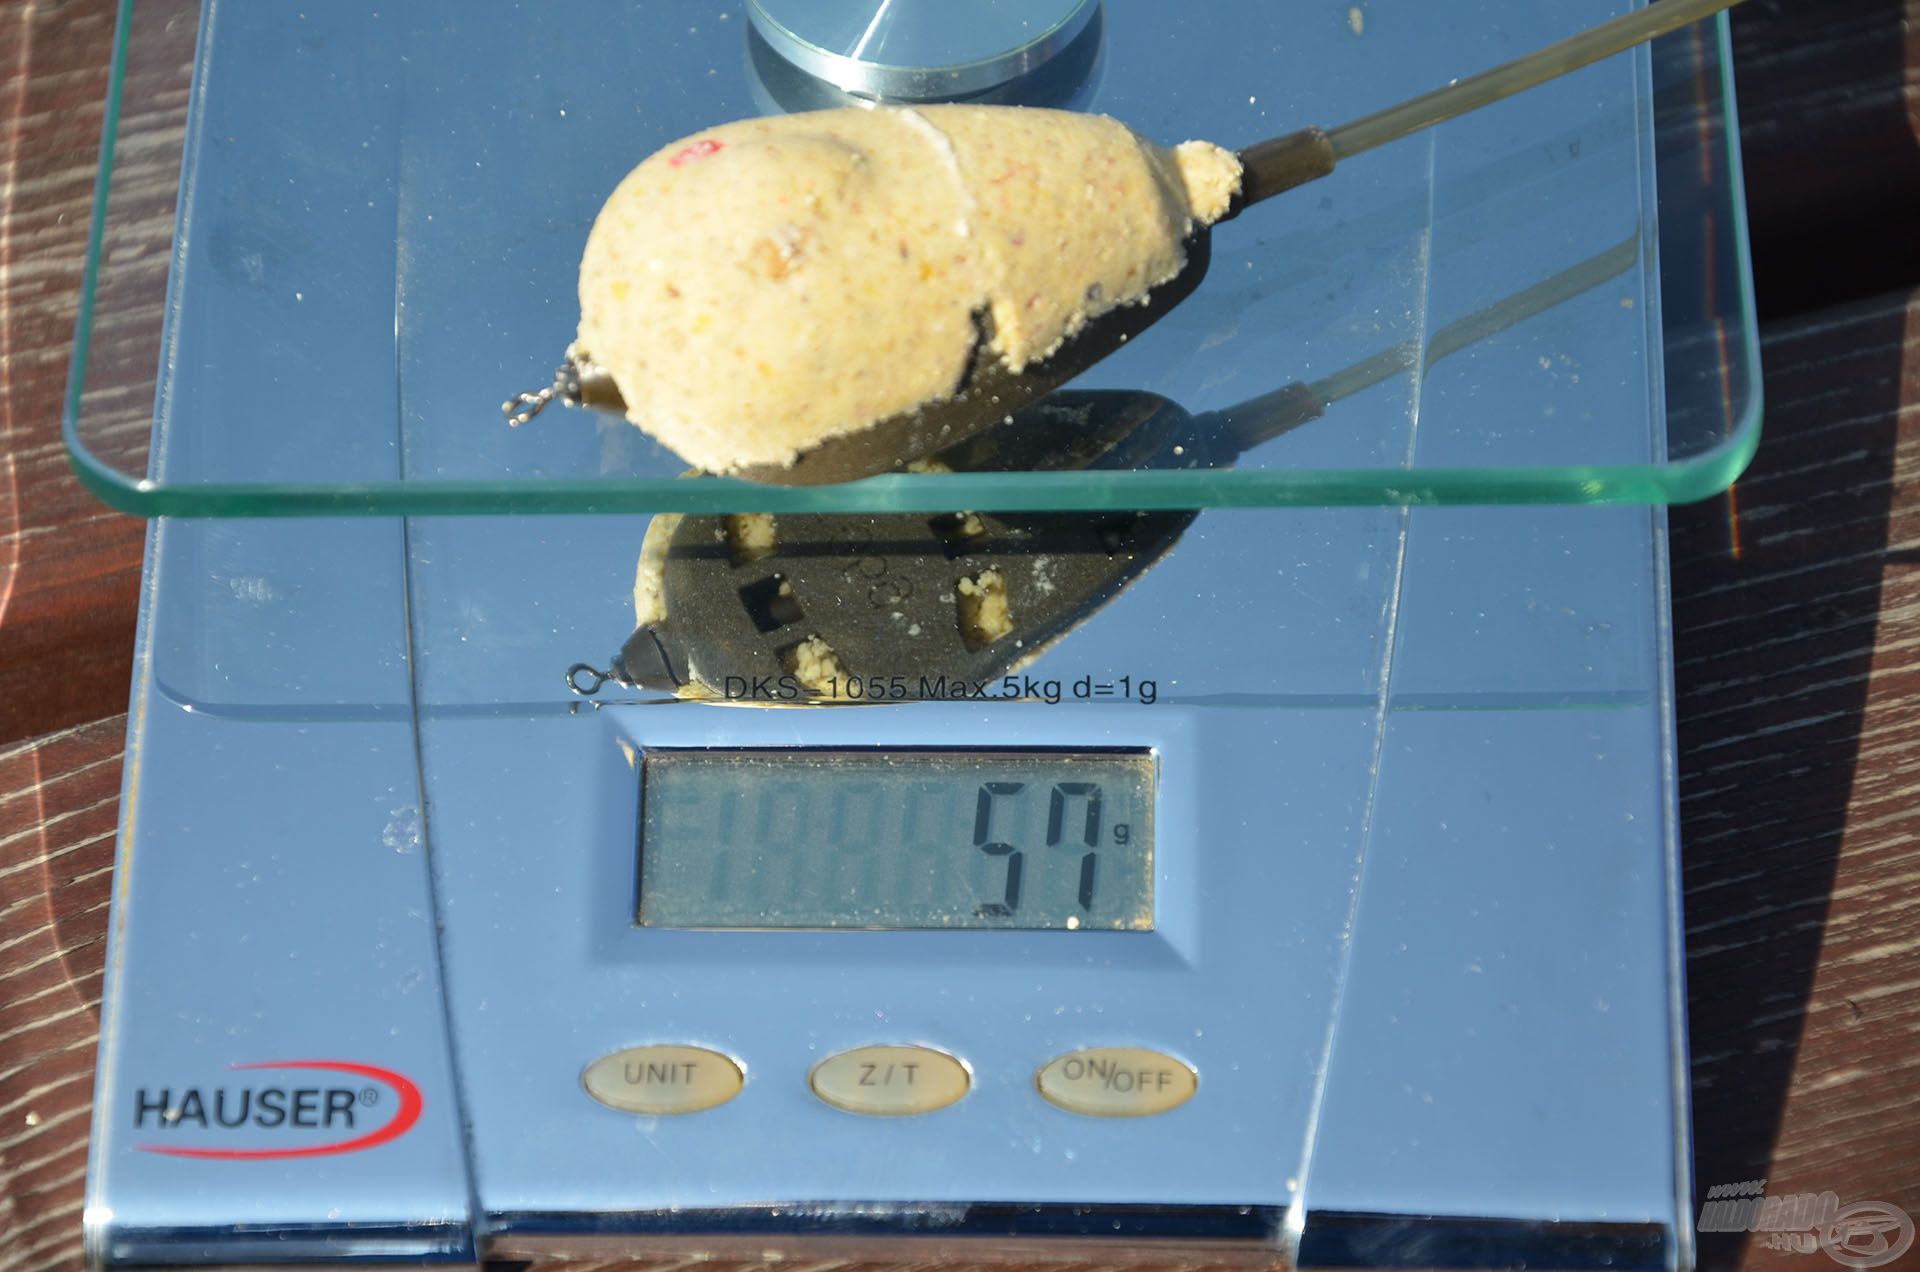 Az L-es méretű (25, 35, 45 g-os) kosarakba 20-25 gramm etetőanyag tölthető. A mérlegen egy 35 g-os kosár látható, amely megtöltve 57 grammot nyom